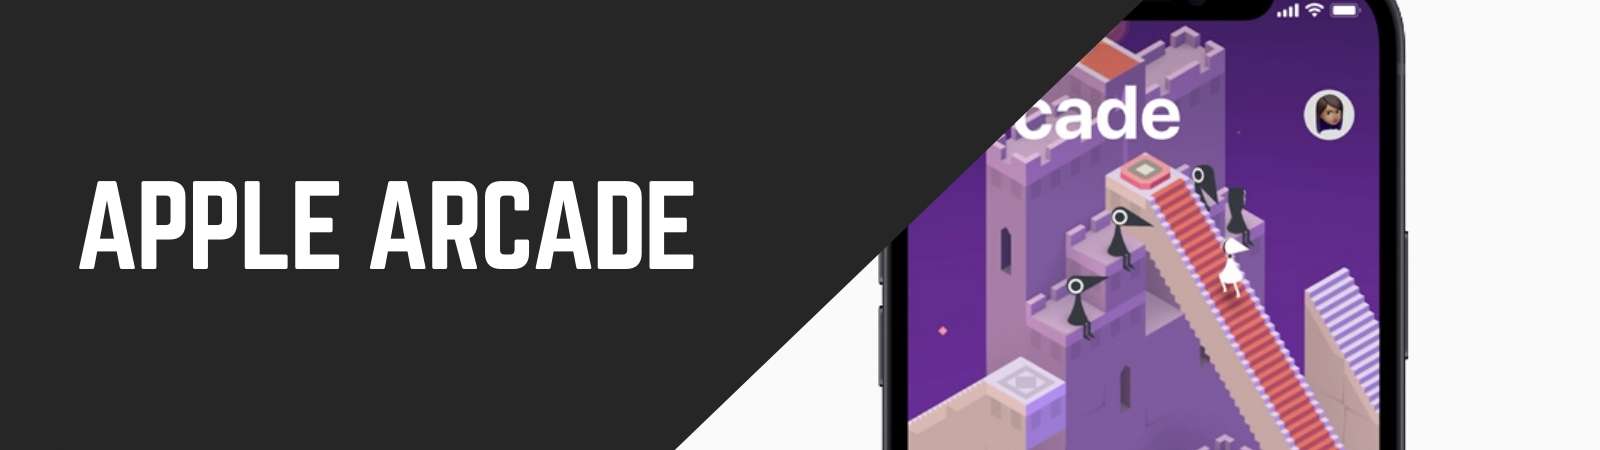 Apple Arcade kosten - Apple Arcade abonnement - Apple Arcade aanbod - Apple Arcade games